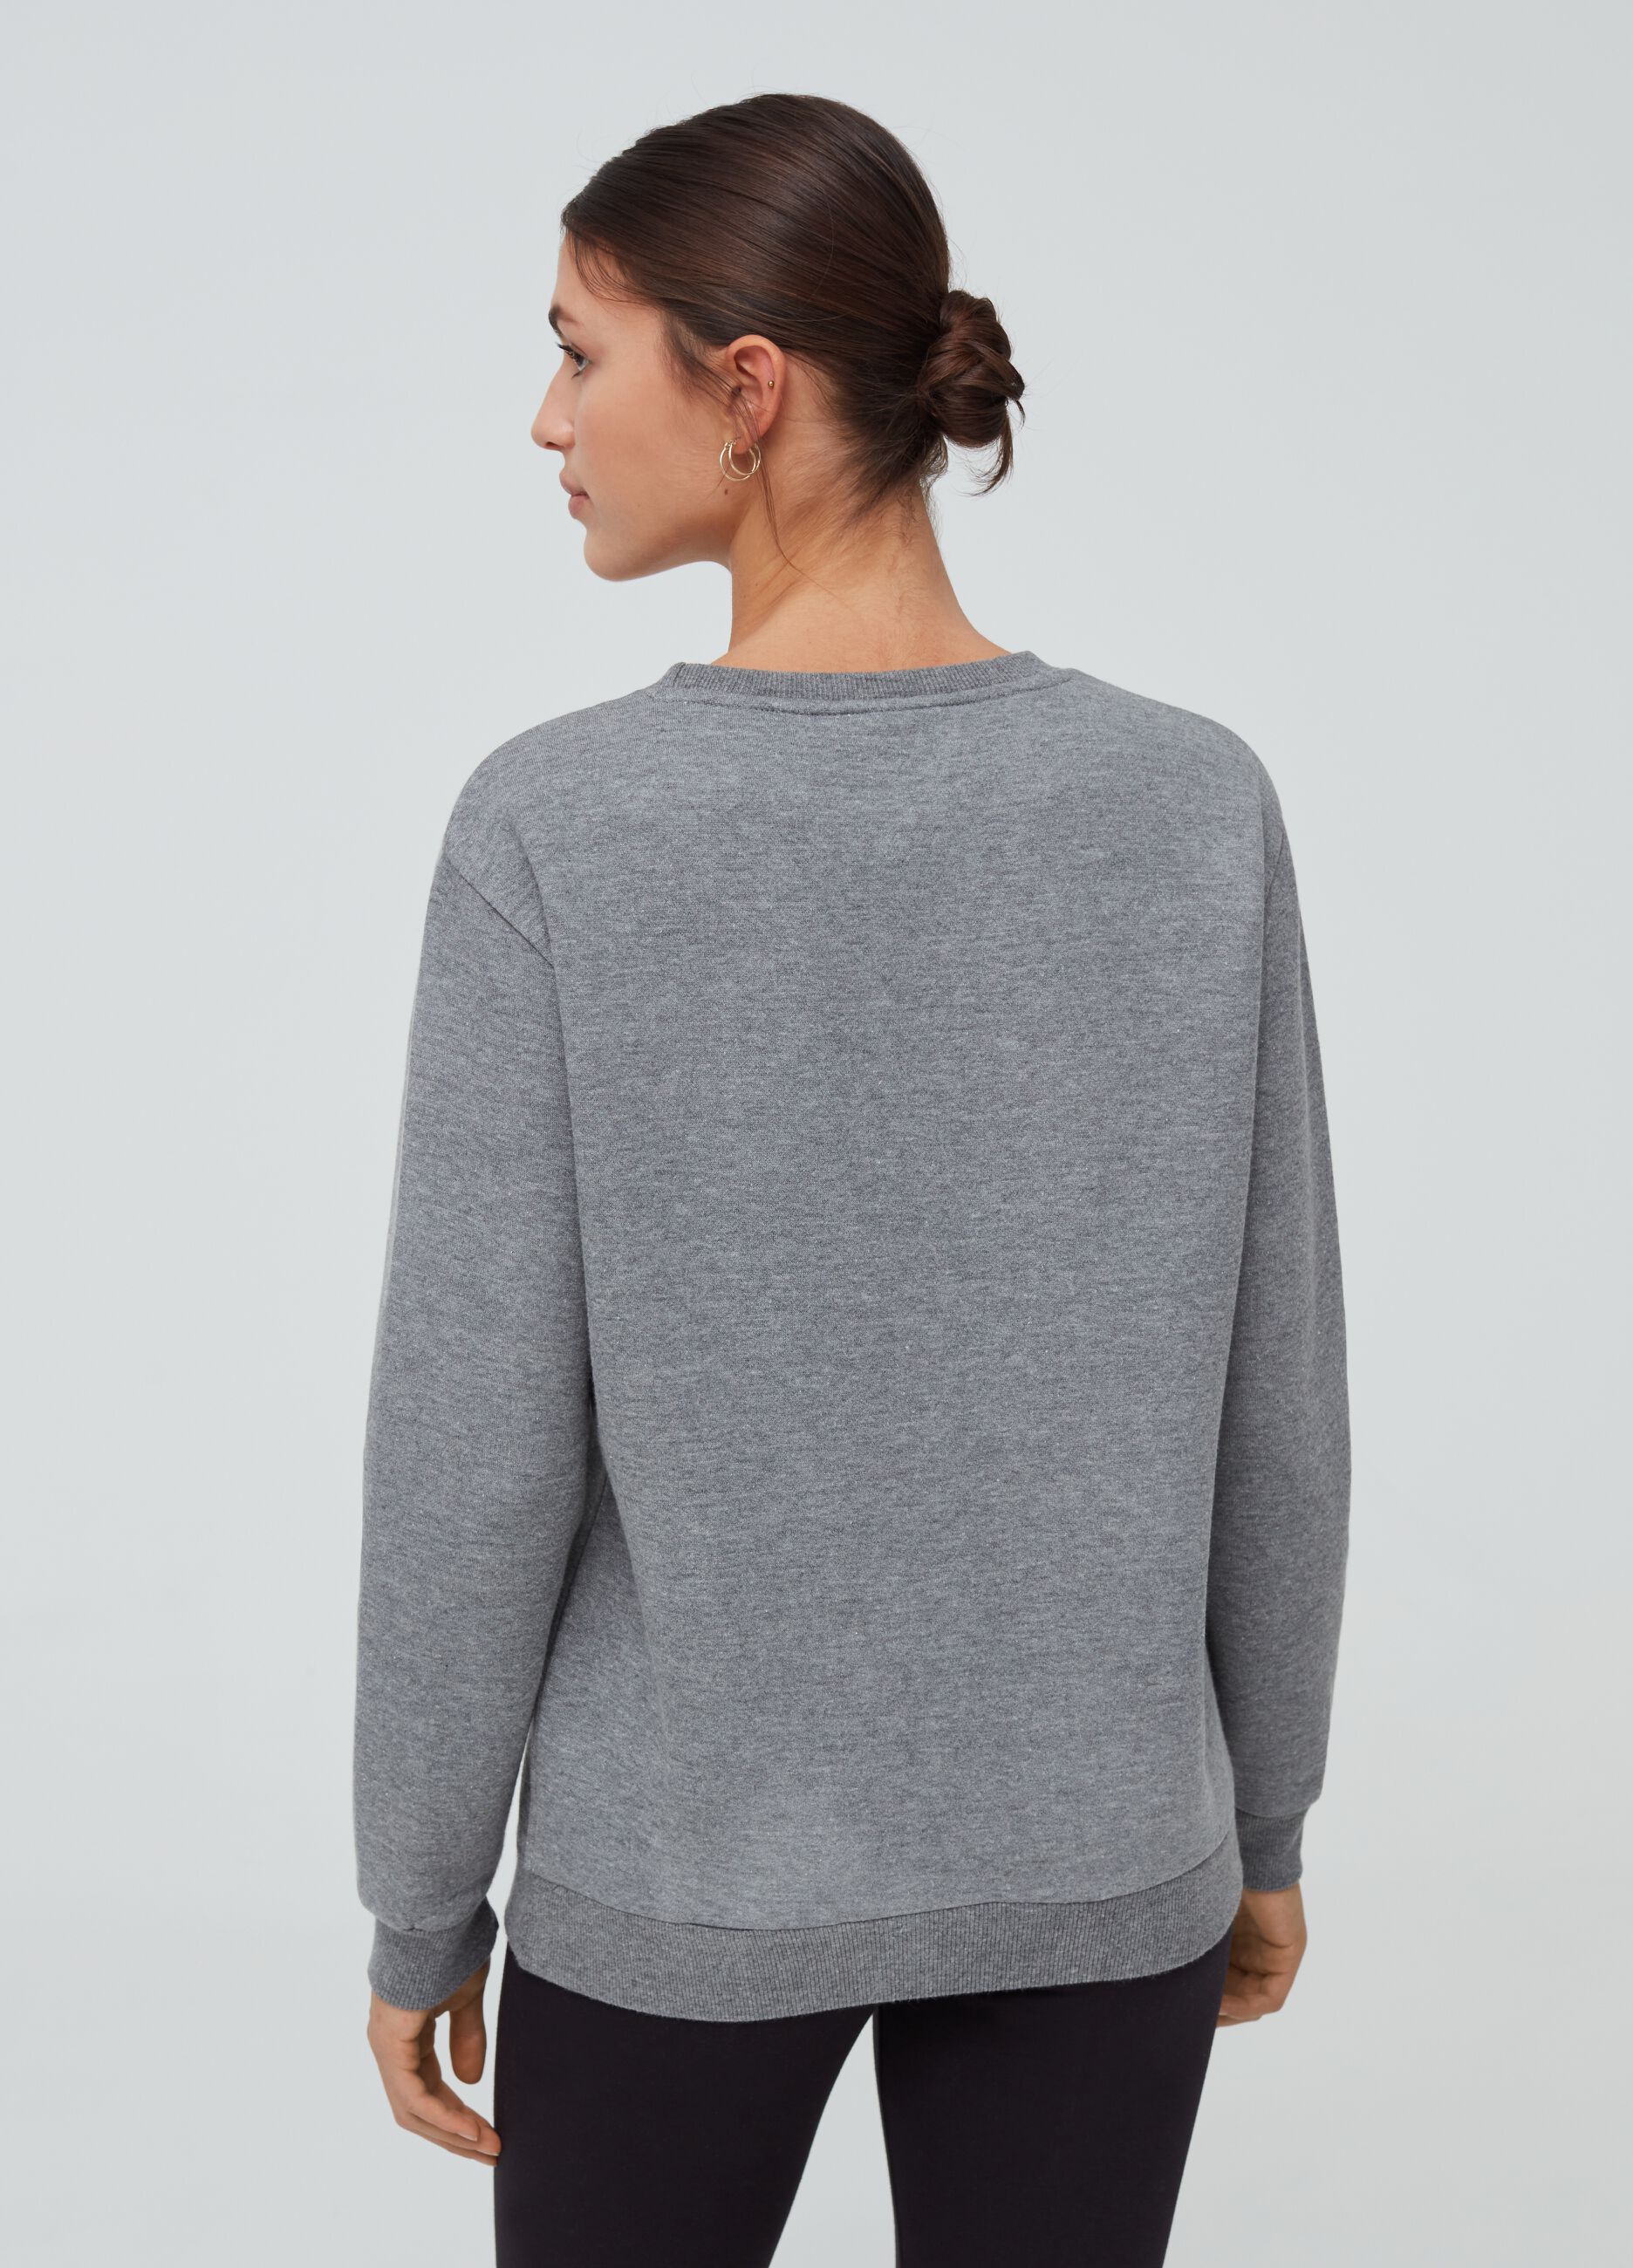 Everlast mélange sweatshirt with drop shoulder